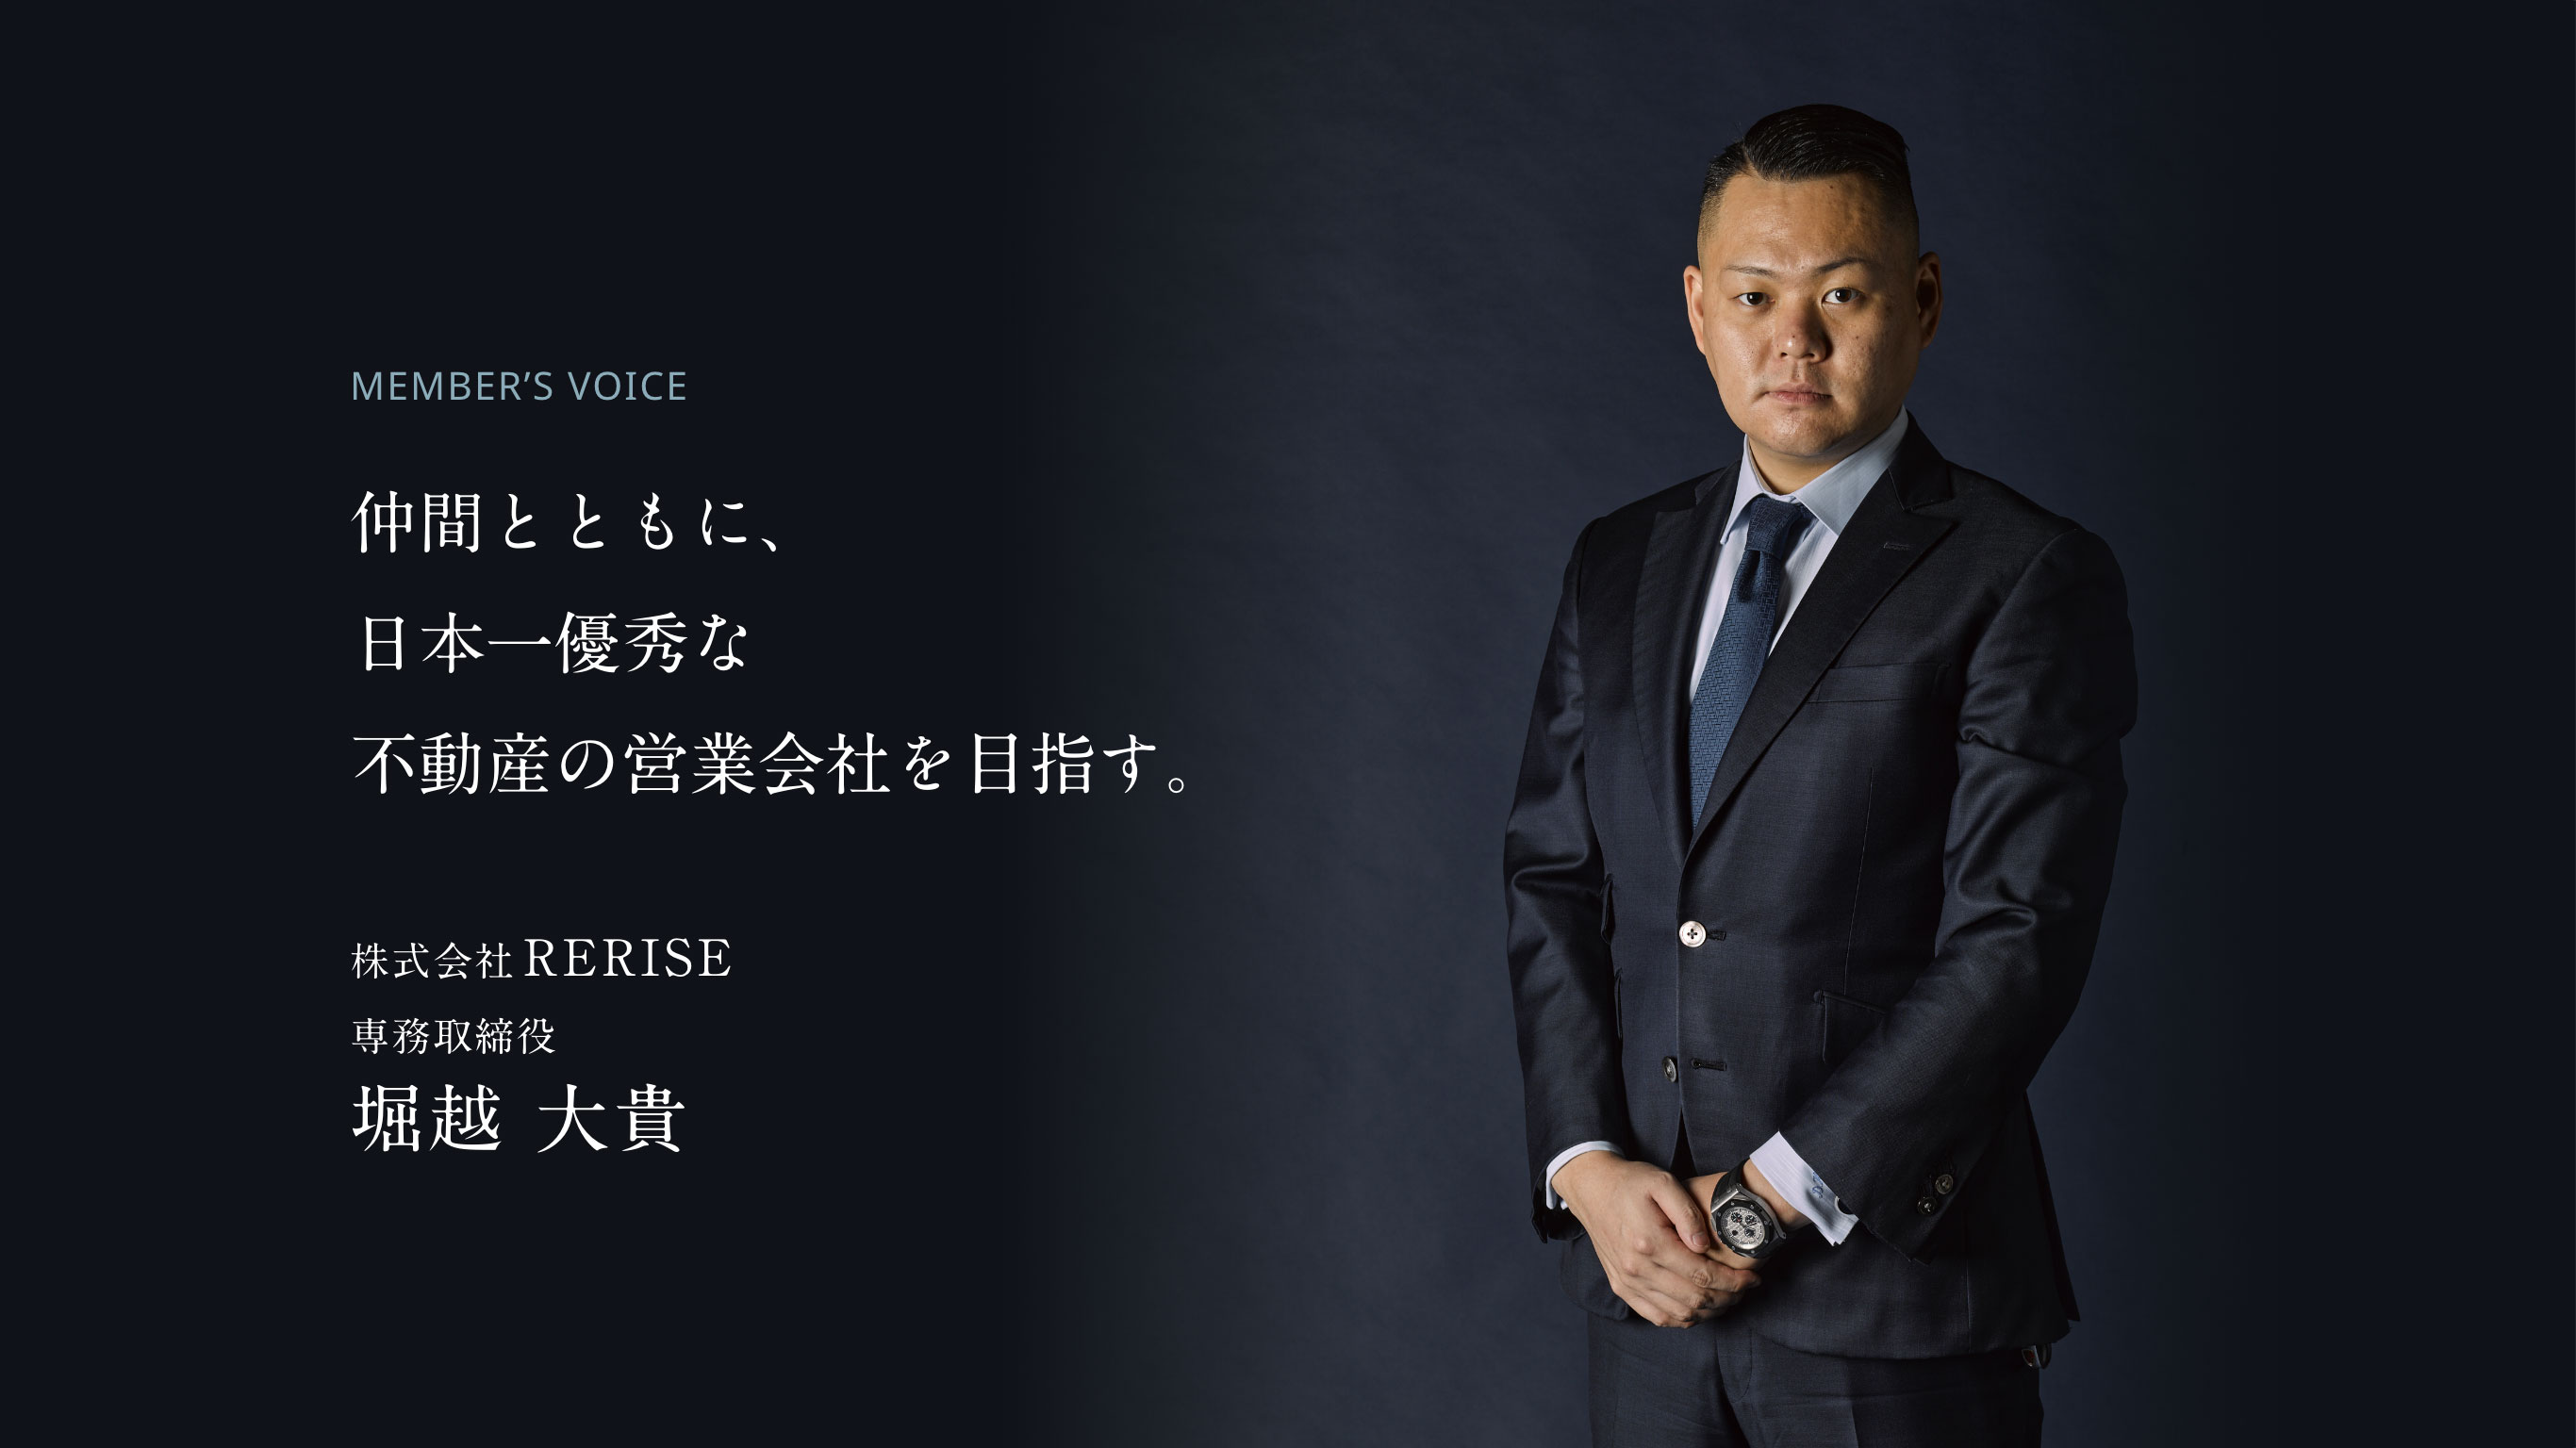 仲間とともに、日本一優秀な不動産の営業会社を目指す。 株式会社RERISE 専務取締役 堀越 大貴